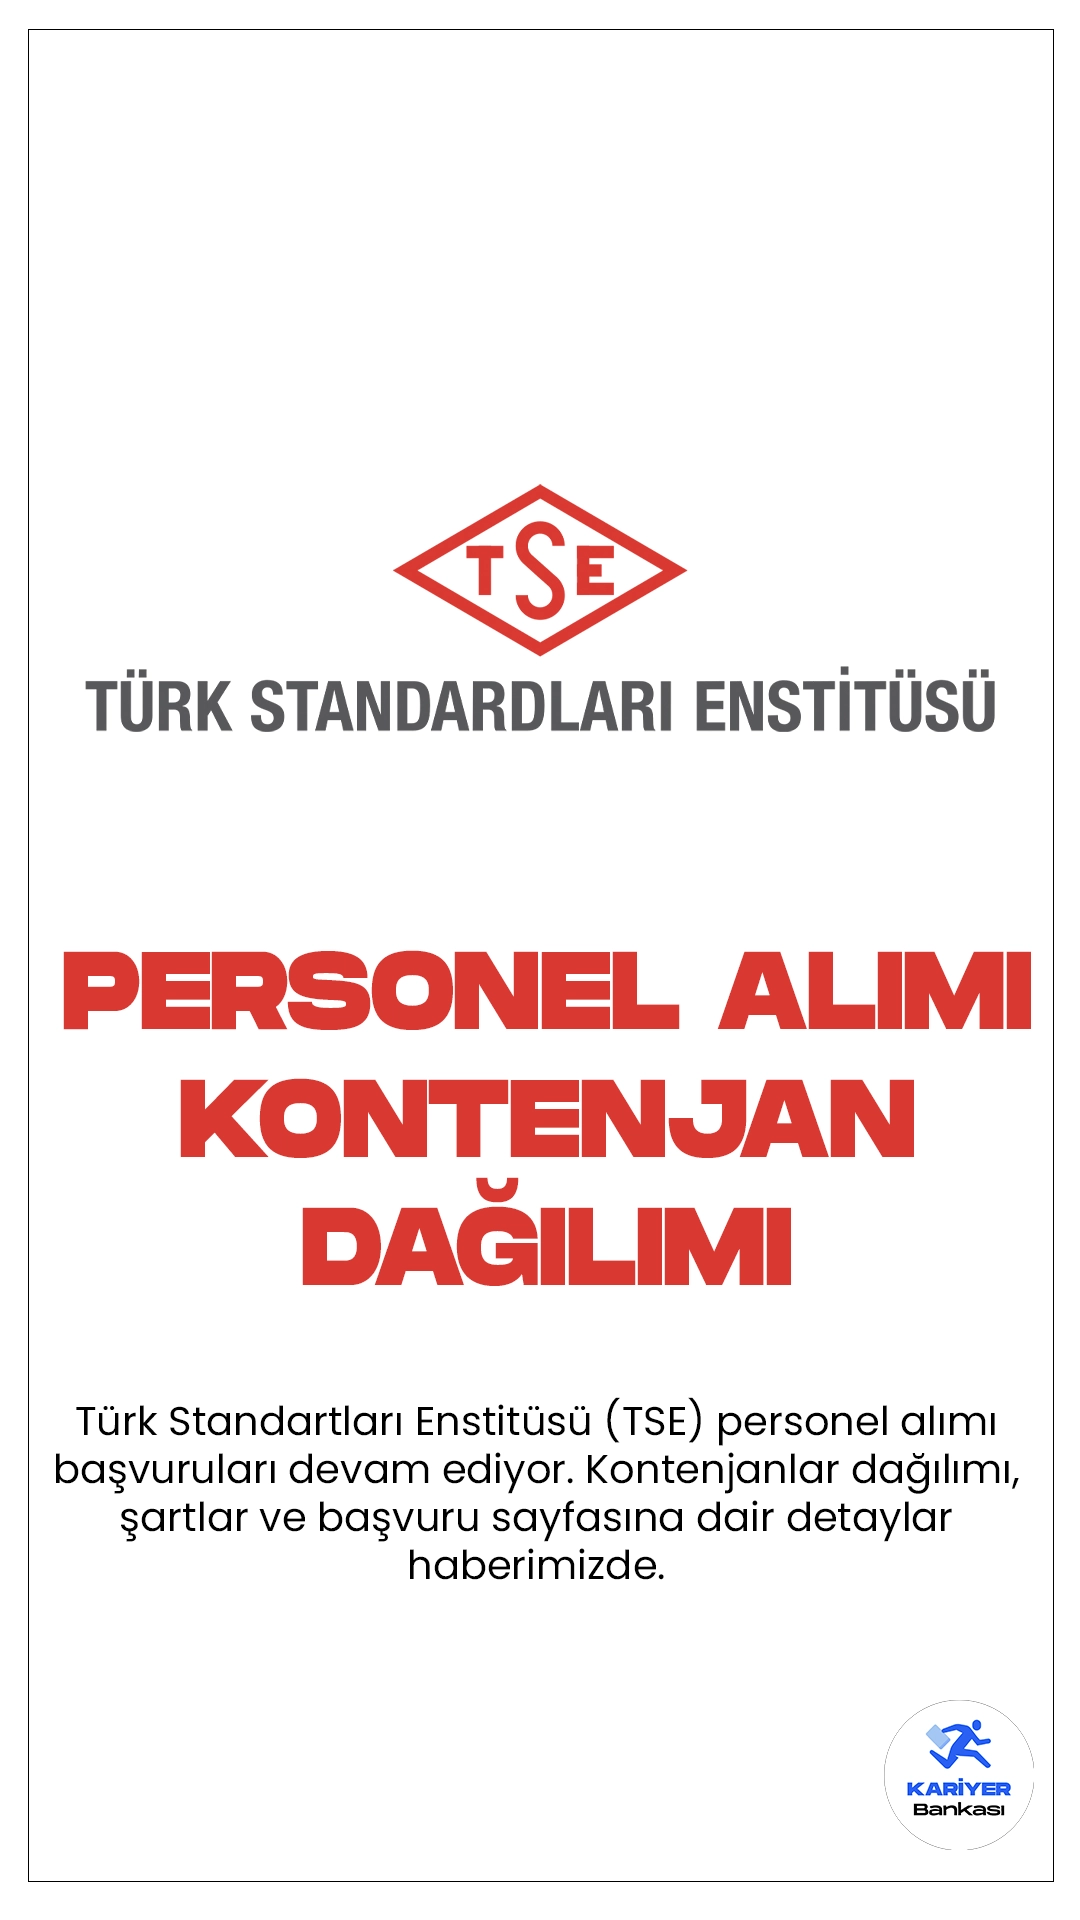 Türk Standartları Enstitüsü (TSE) personel alımı başvuruları devam ediyor. Kontenjanlar dağılımı, şartlar ve başvuru sayfasına dair detaylar haberimizde.